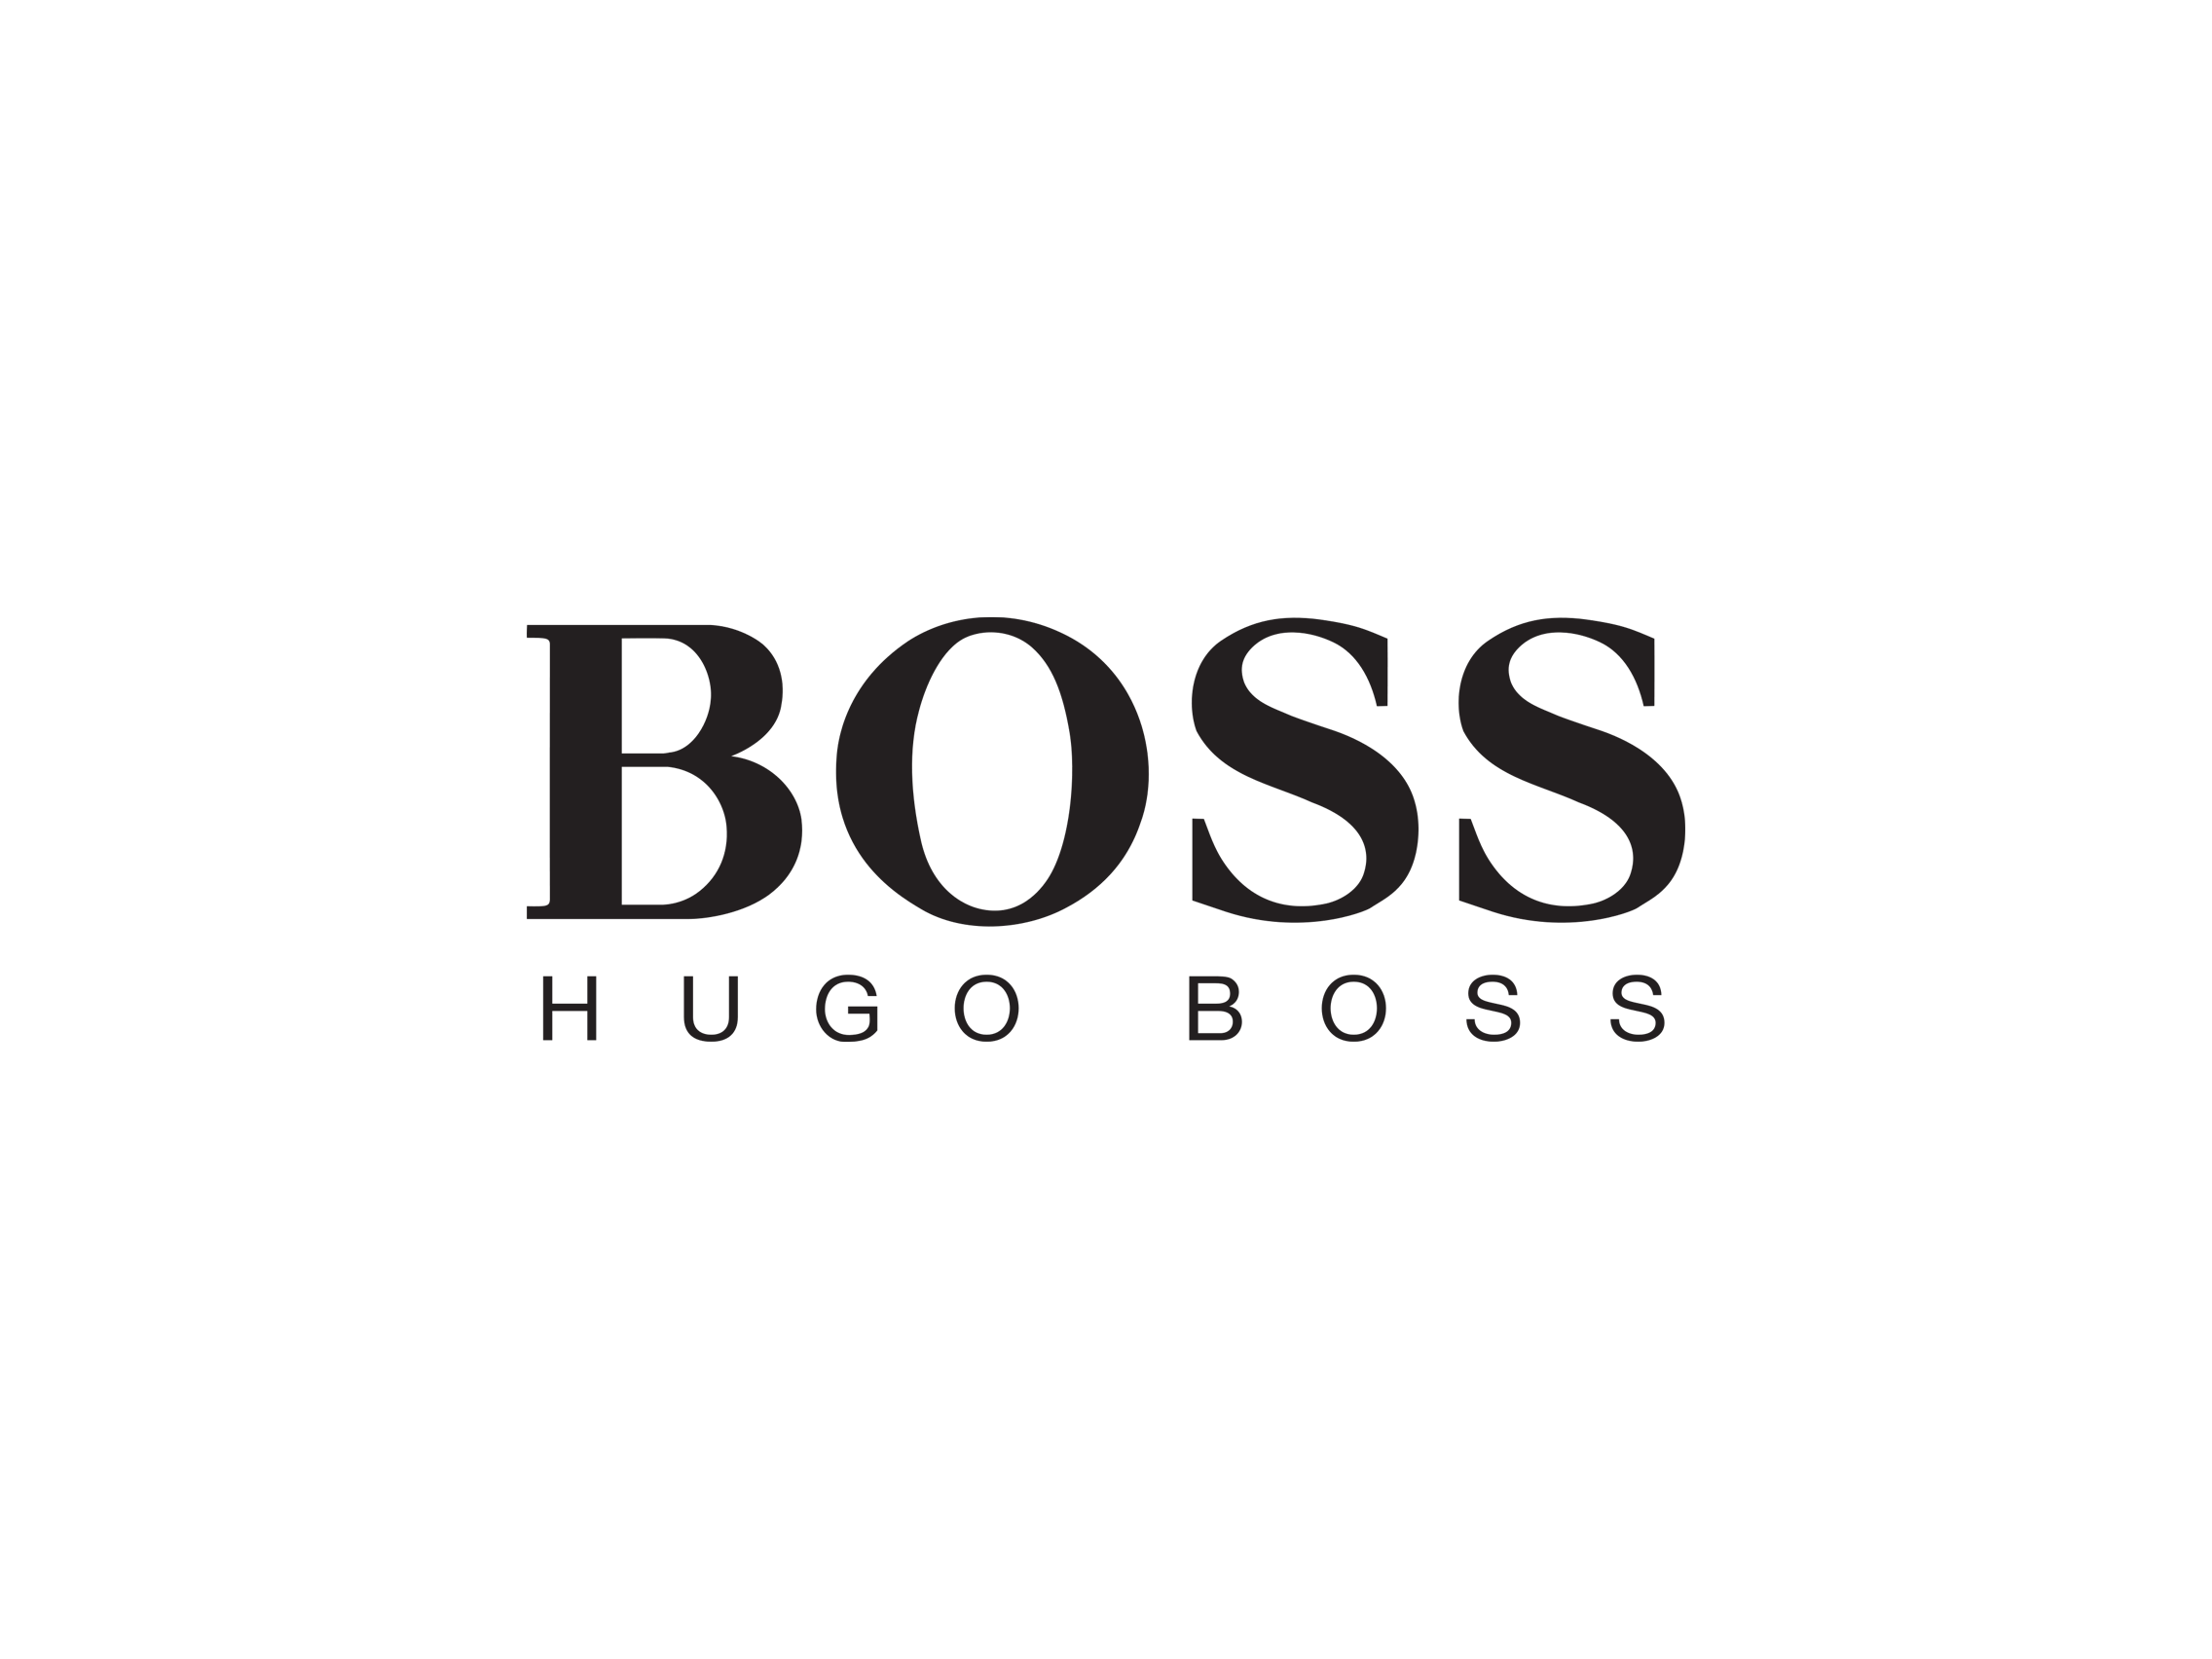 Хьюго босс лого. Хьюго босс мужские духи логотип. Хьюго босс надпись. Хьюго босс бренды Хьюго и босс. Хуга босс